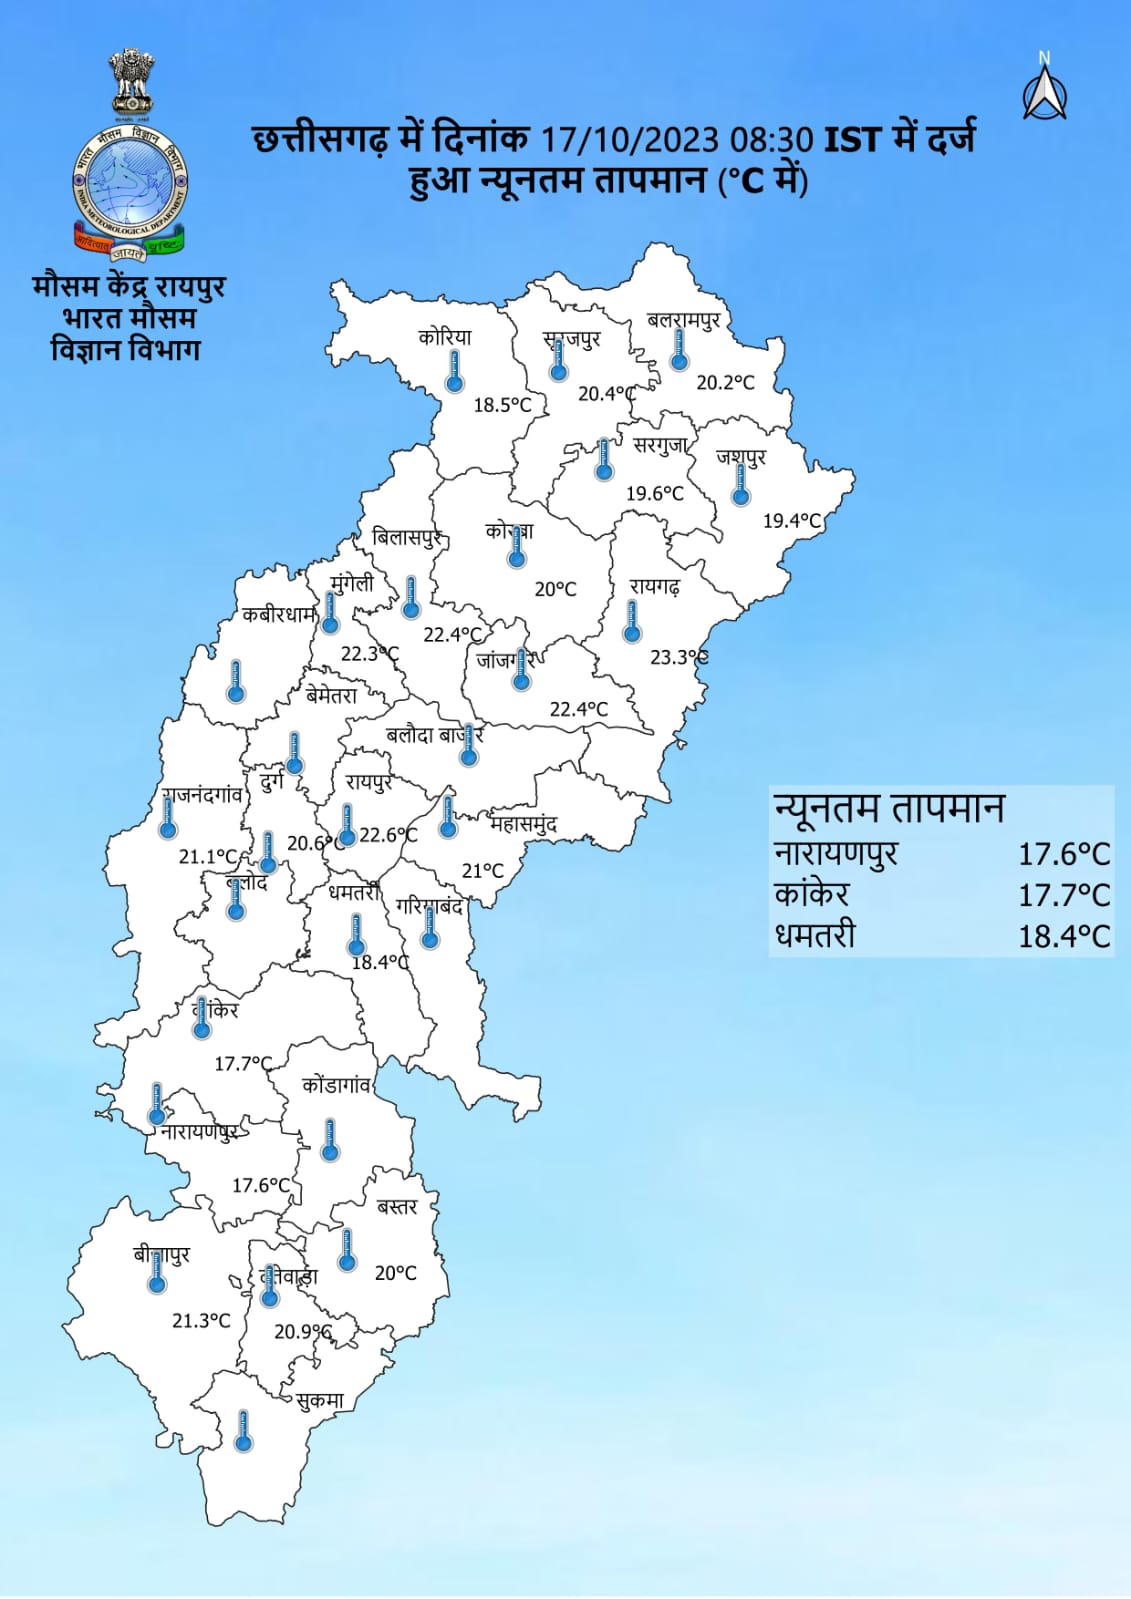 Chhattisgarh Weather : 3 दिन बाद फिर बदलेगा मौसम, तापमान में आएगी गिरावट, दिखेगा कोहरे का असर, शुरू होगी ठंड, जानें IMD अपडेट